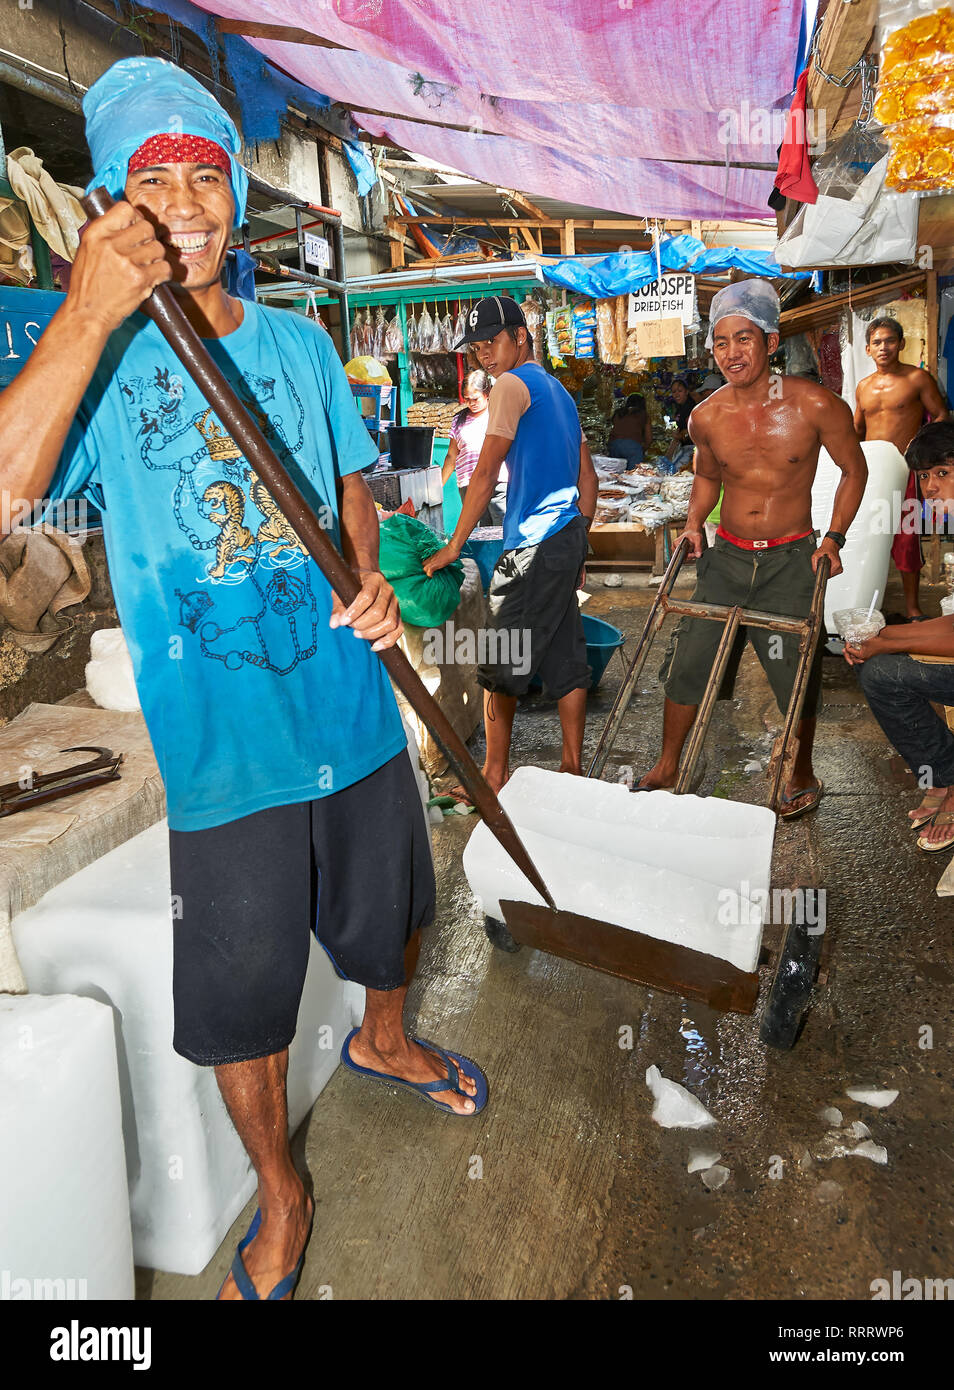 Stadt Puerto Princesa, Palawan, Philippinen - 25. Februar 2010: Portrait von jungen männlichen Arbeiter an der Wet Market bewegt riesige Eisblöcke Kunden Stockfoto